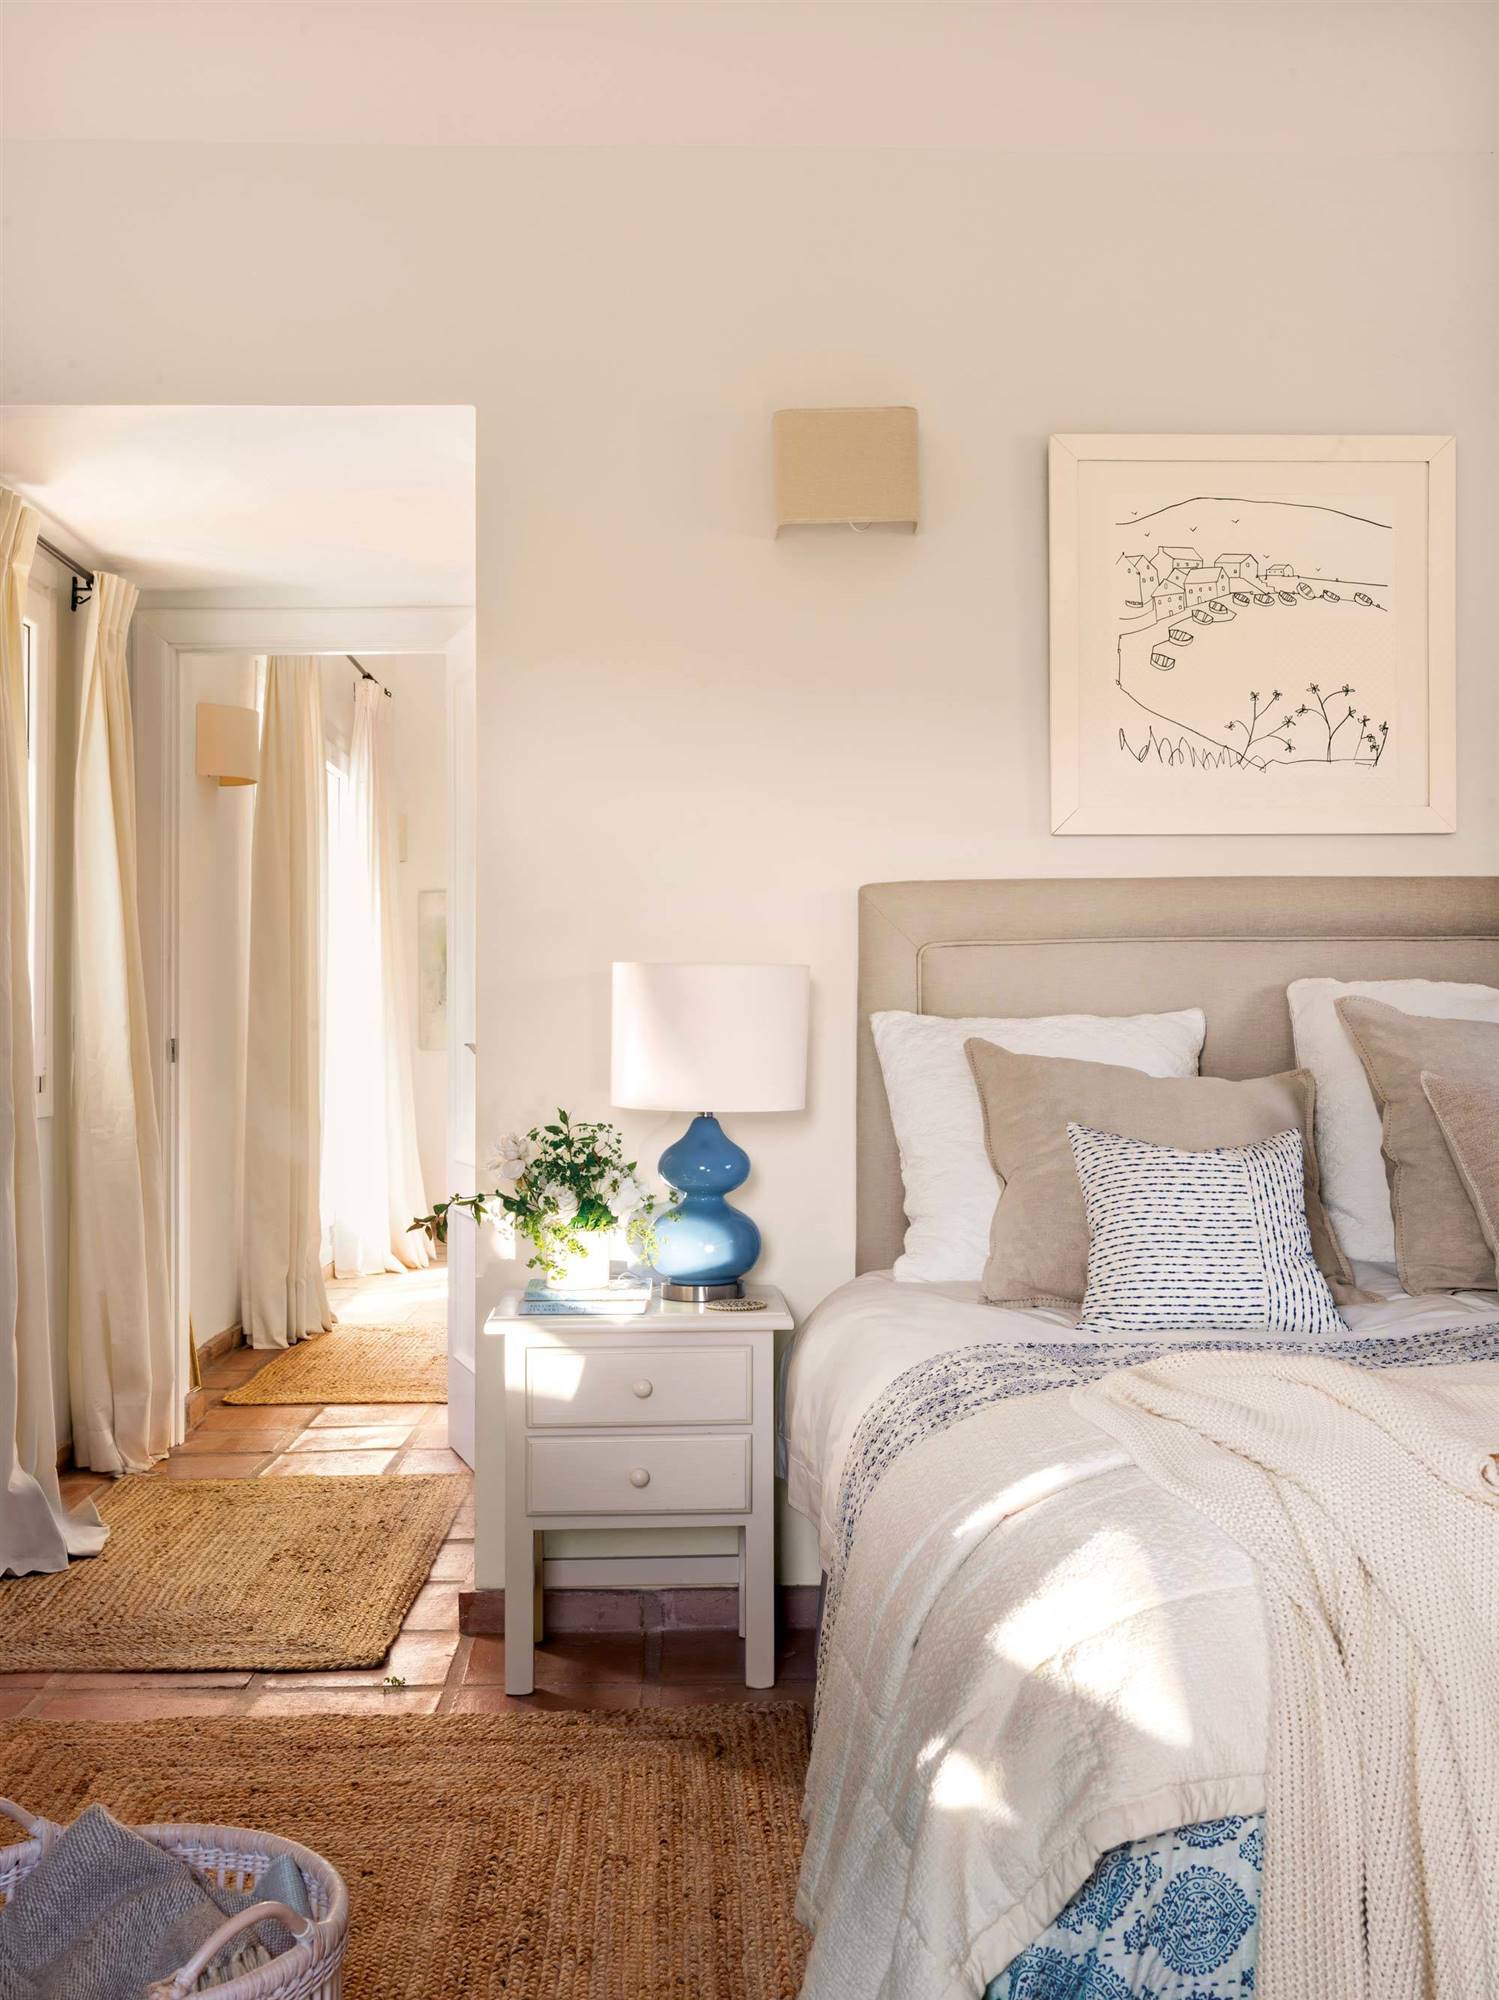 Dormitorio rústico decorado en blanco y azul, con suelo de barro y alfombras de fibra vegetal.